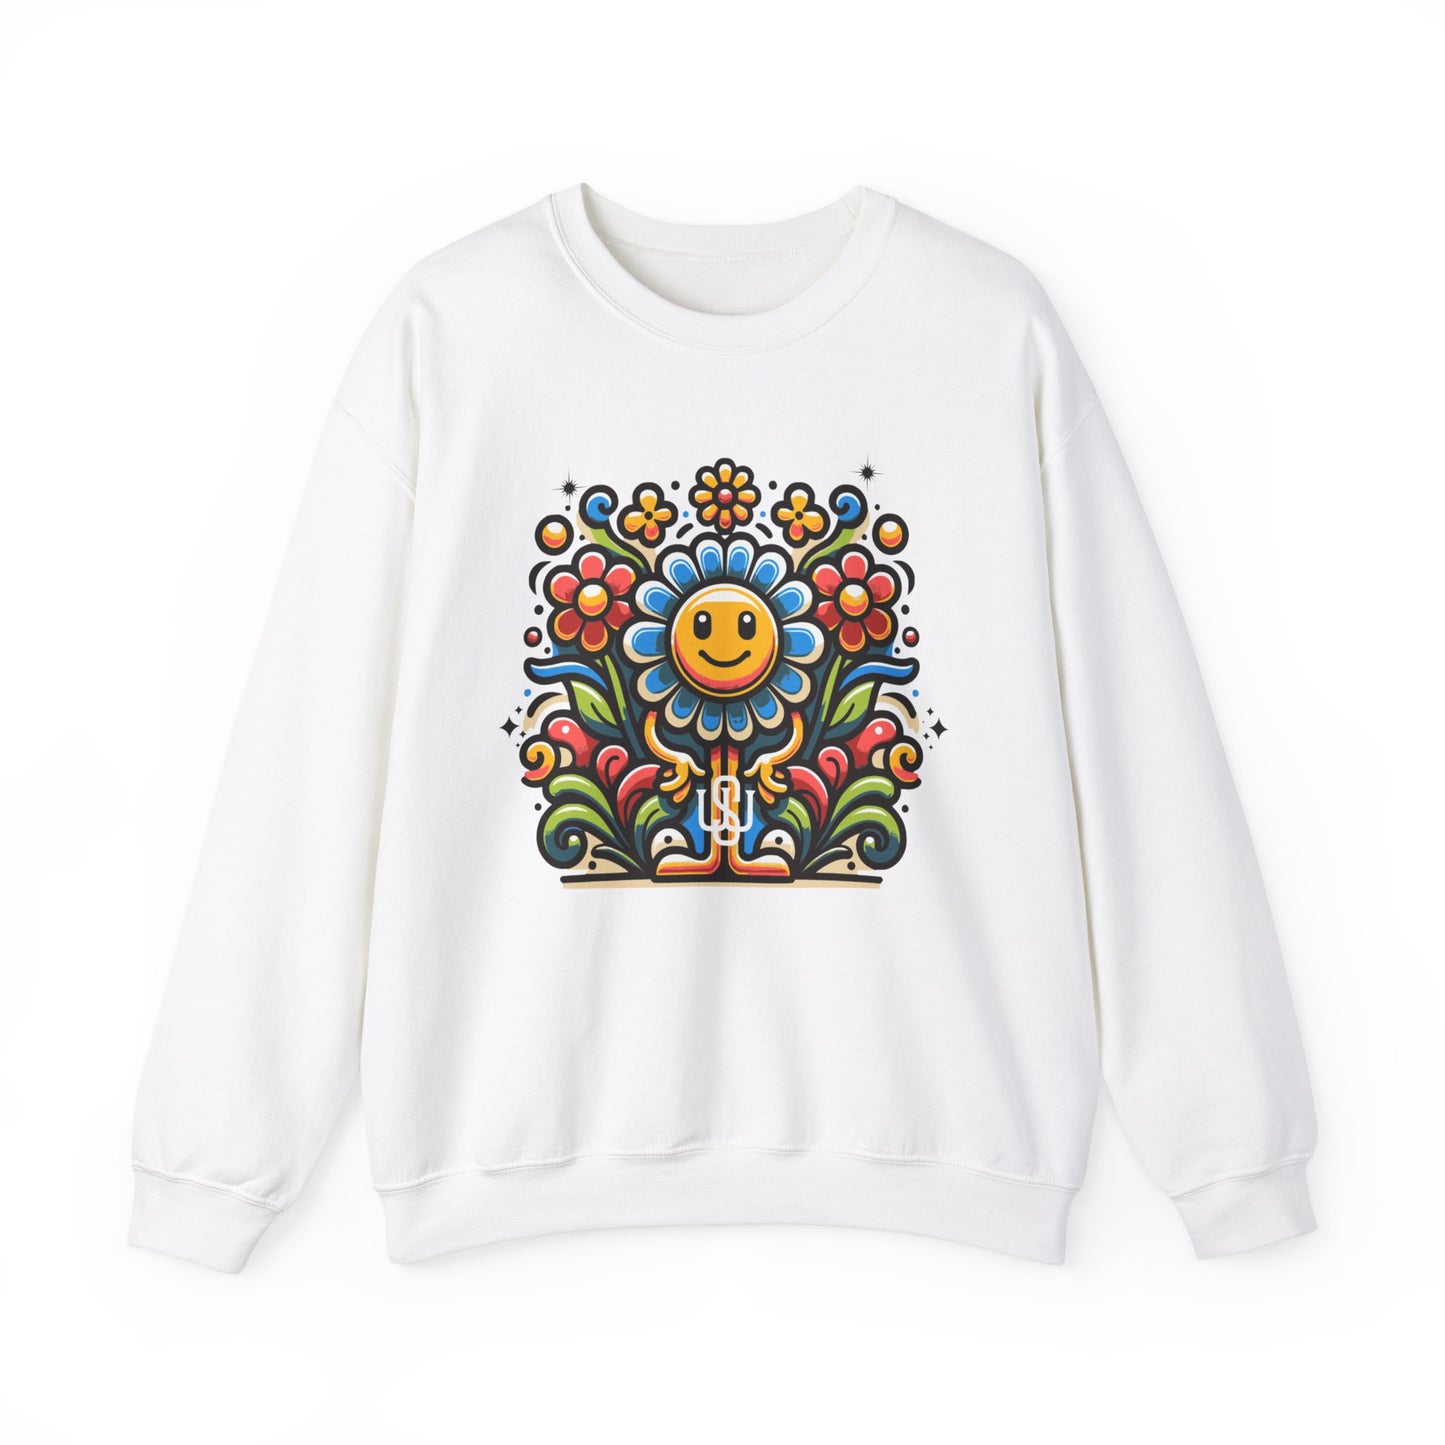 Mr.Flower Sweatshirt